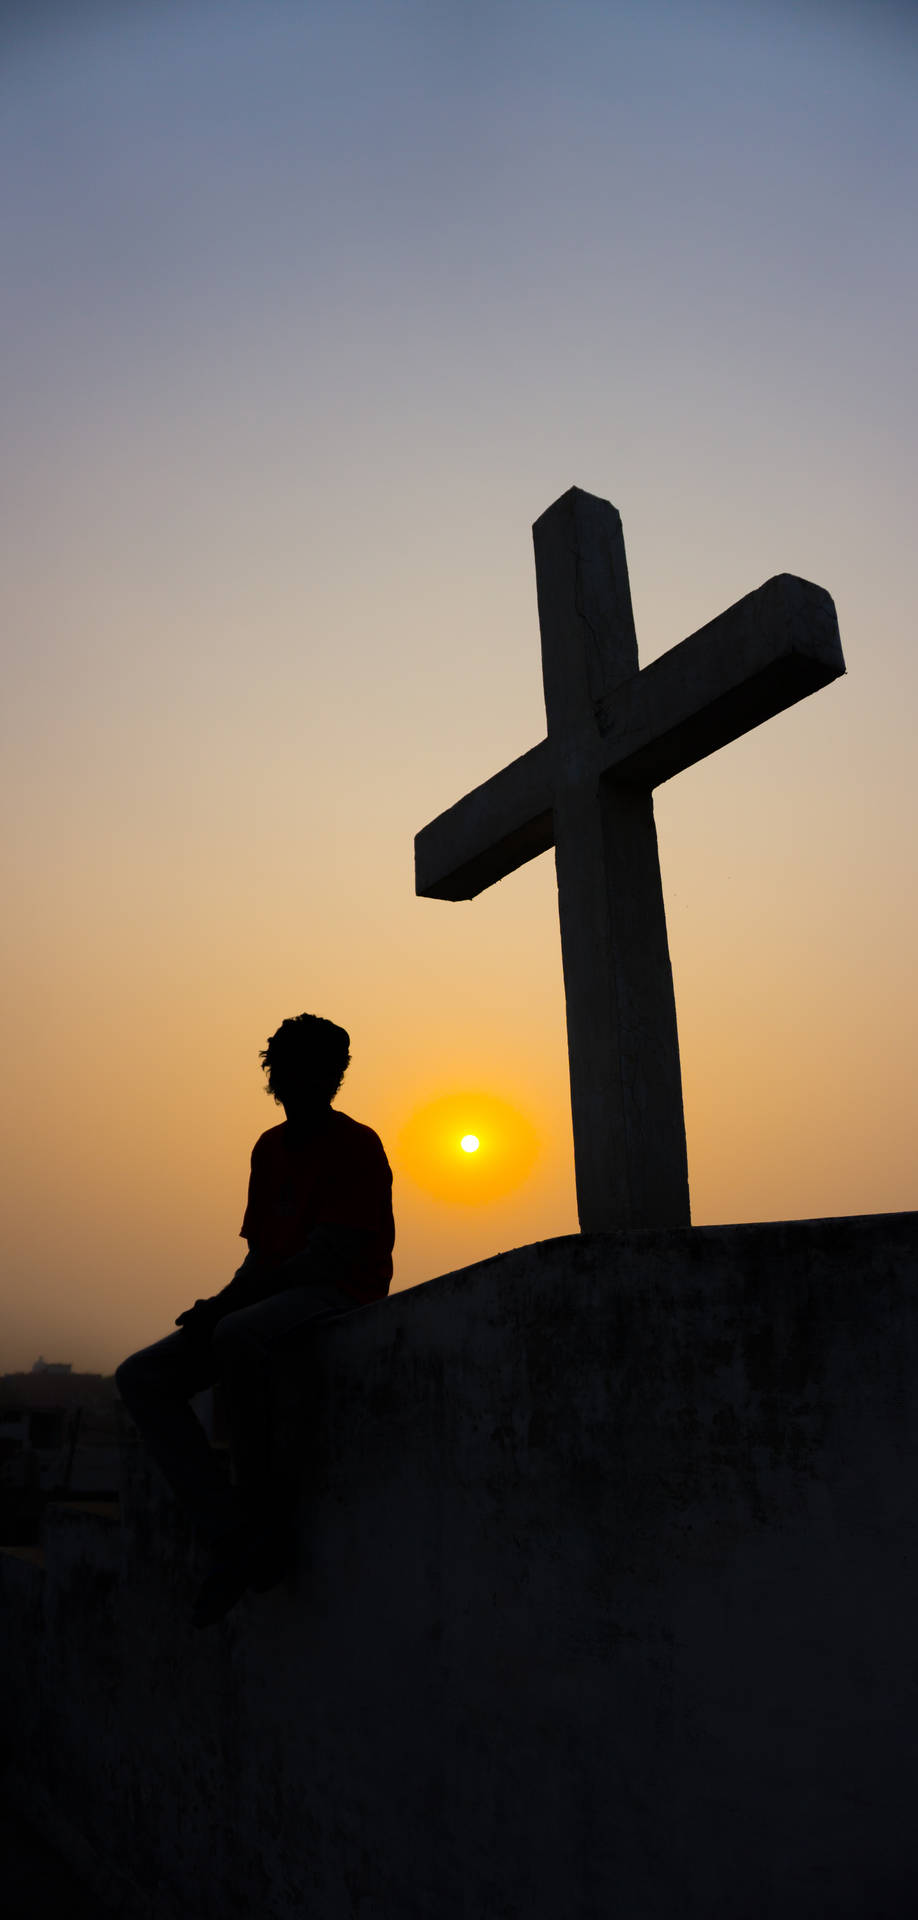 Christian Cross Against Sunset Horizon Background